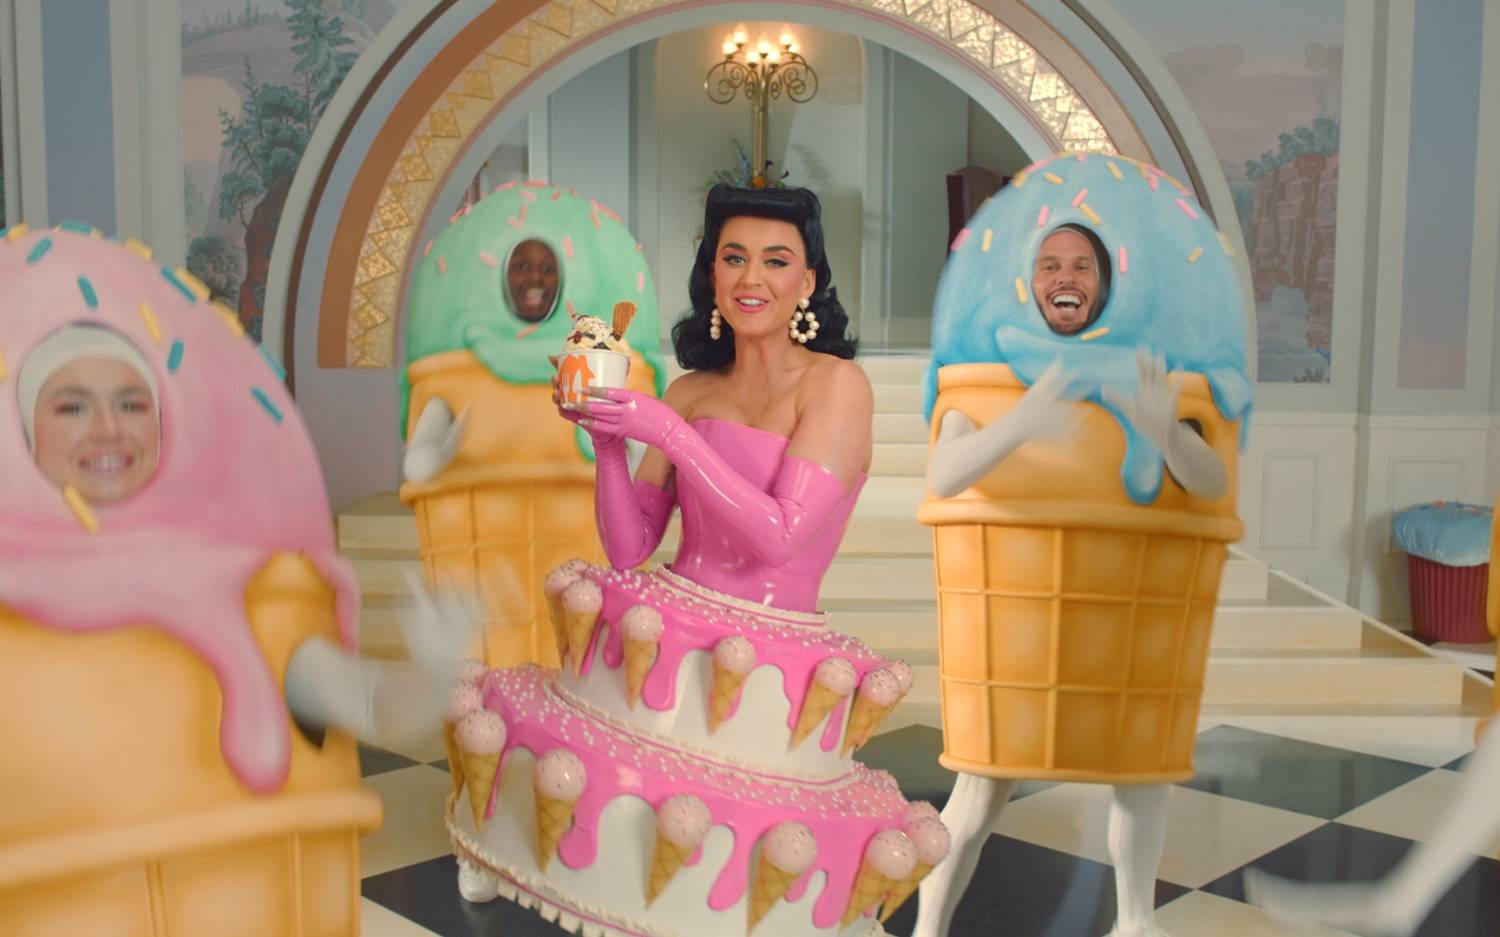 Katy Perry ist das Gesicht der neuen 360°-Kampagne von Lieferando / ©Lieferando